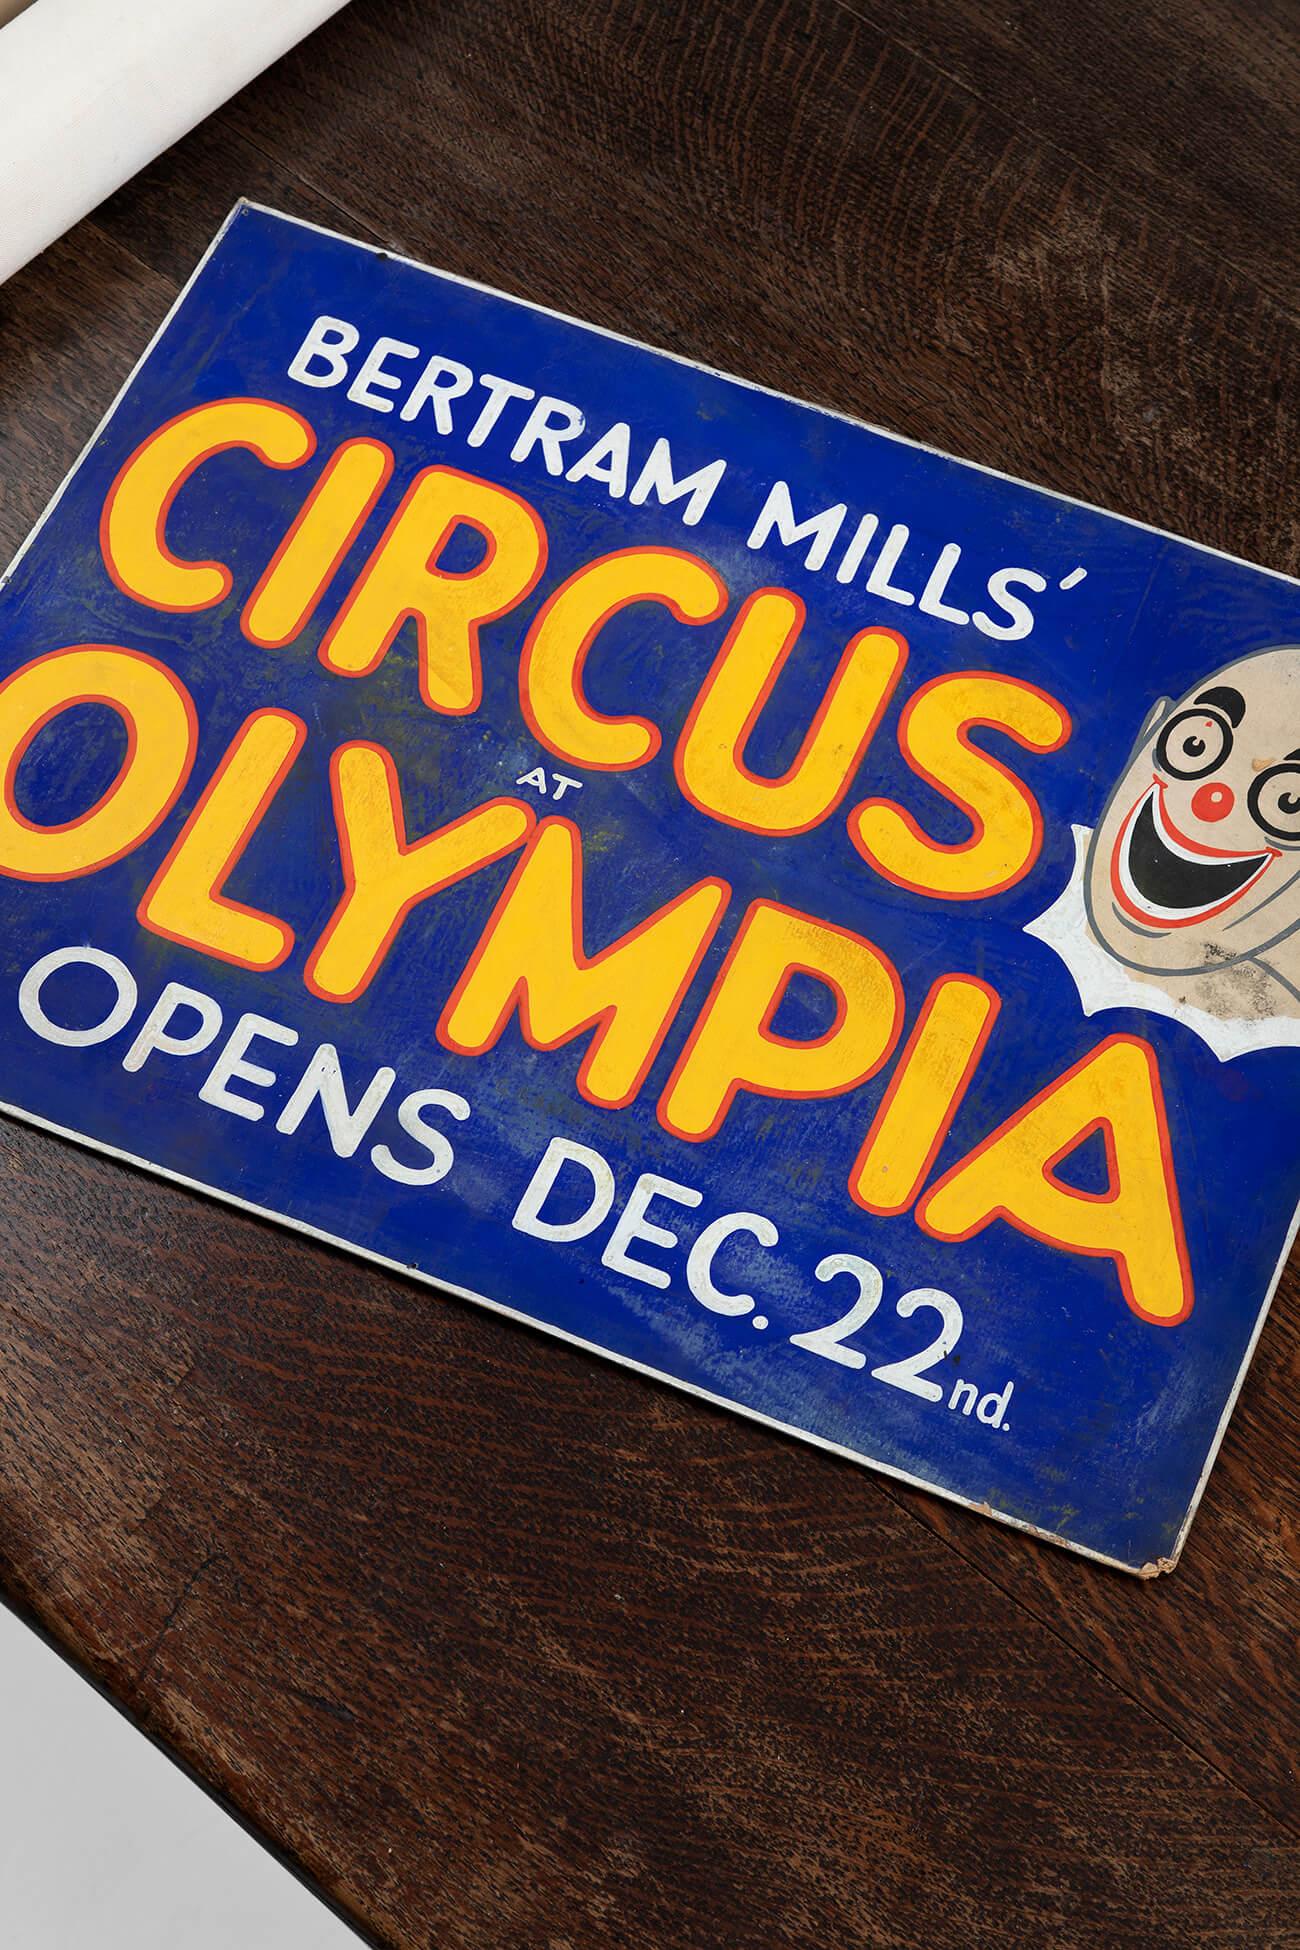 Le cirque de Bertram Mills à l'Olympia ouvre le 22 décembre'. Des couleurs et un design exceptionnels. La société W. E. Berry Ltd, basée à Bradford, a été l'un des principaux producteurs et imprimeurs d'affiches de films au Royaume-Uni à partir des